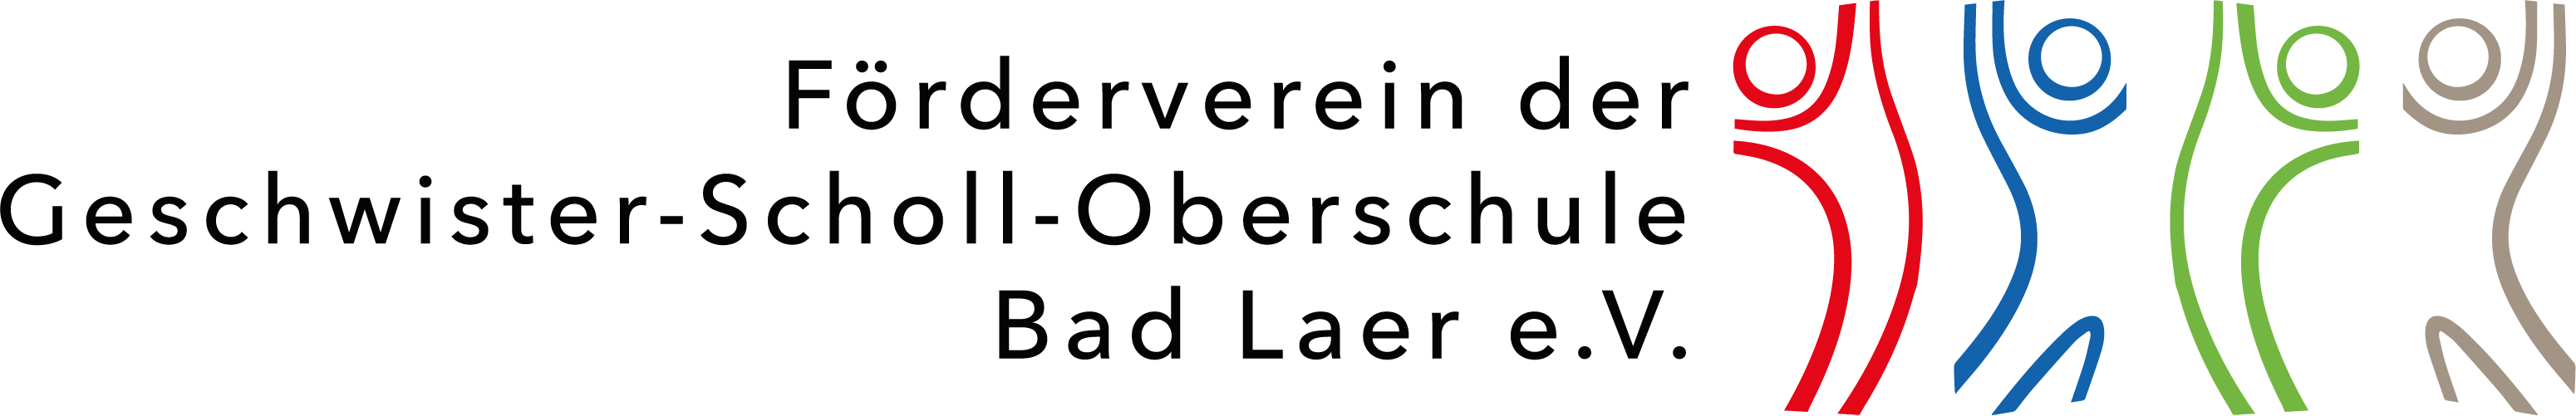 Förderverein der Geschwister-Scholl-Oberschule Bad Laer e.V.